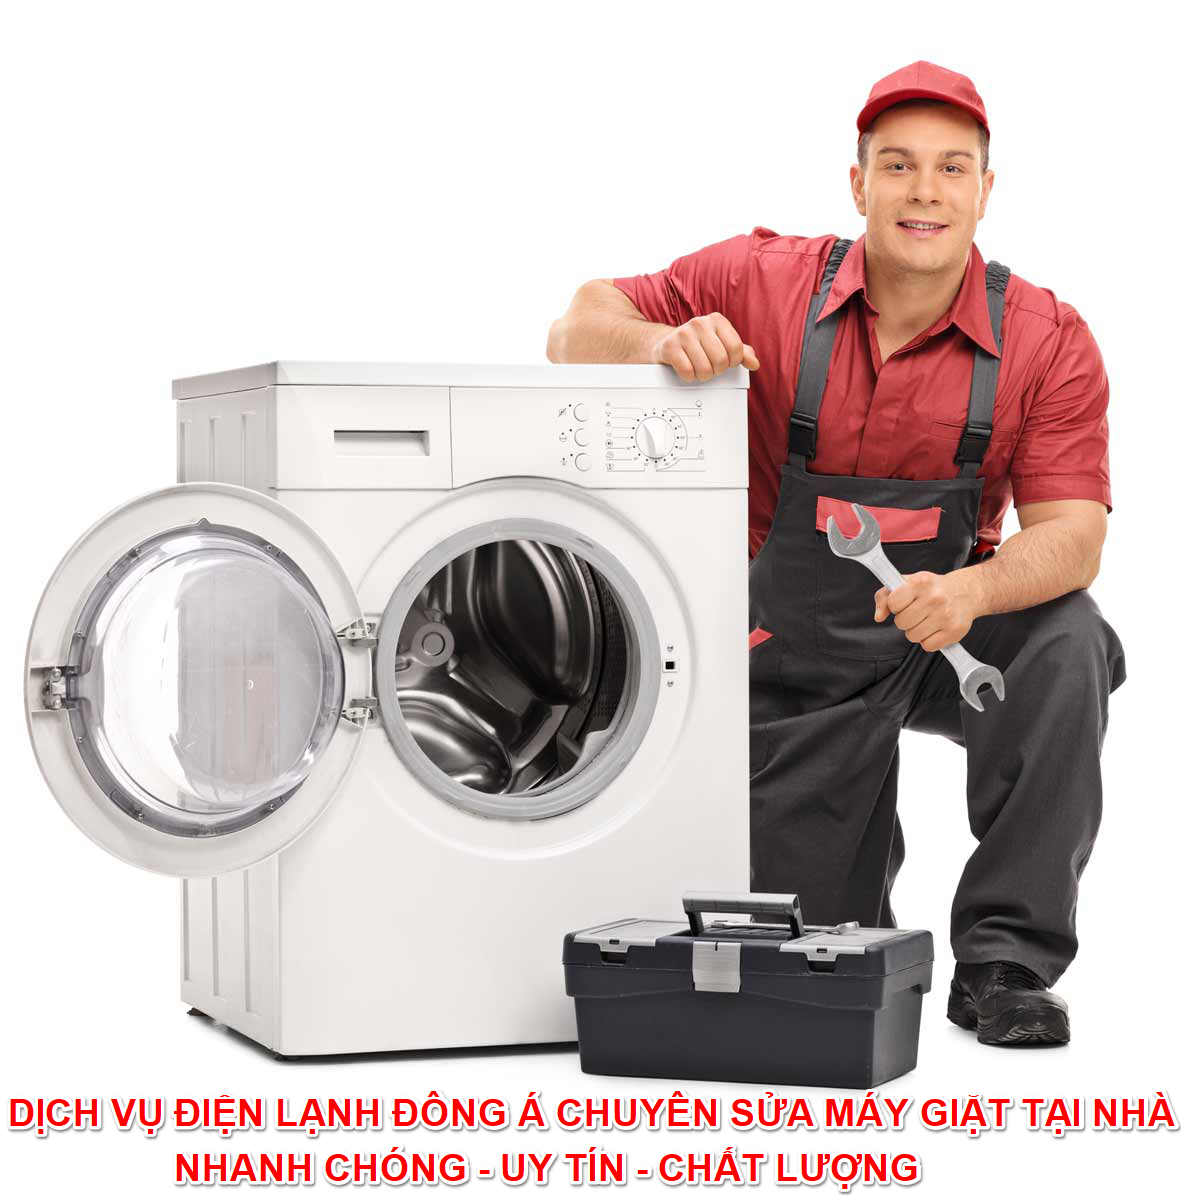 Máy giặt không vào điện nguyên nhân và cách sửa